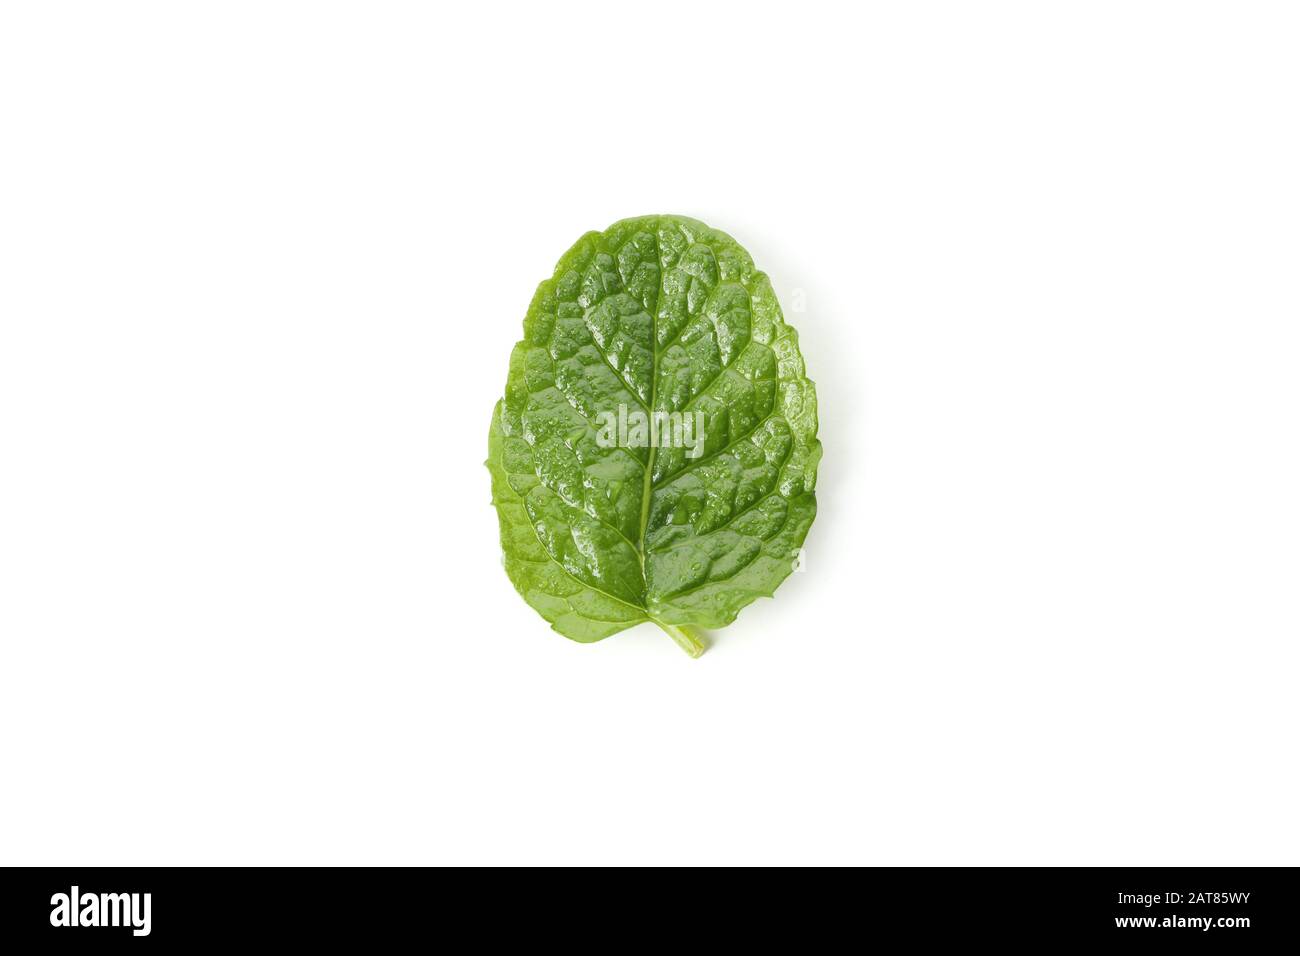 Fresh mint leaf isolated on white background Stock Photo